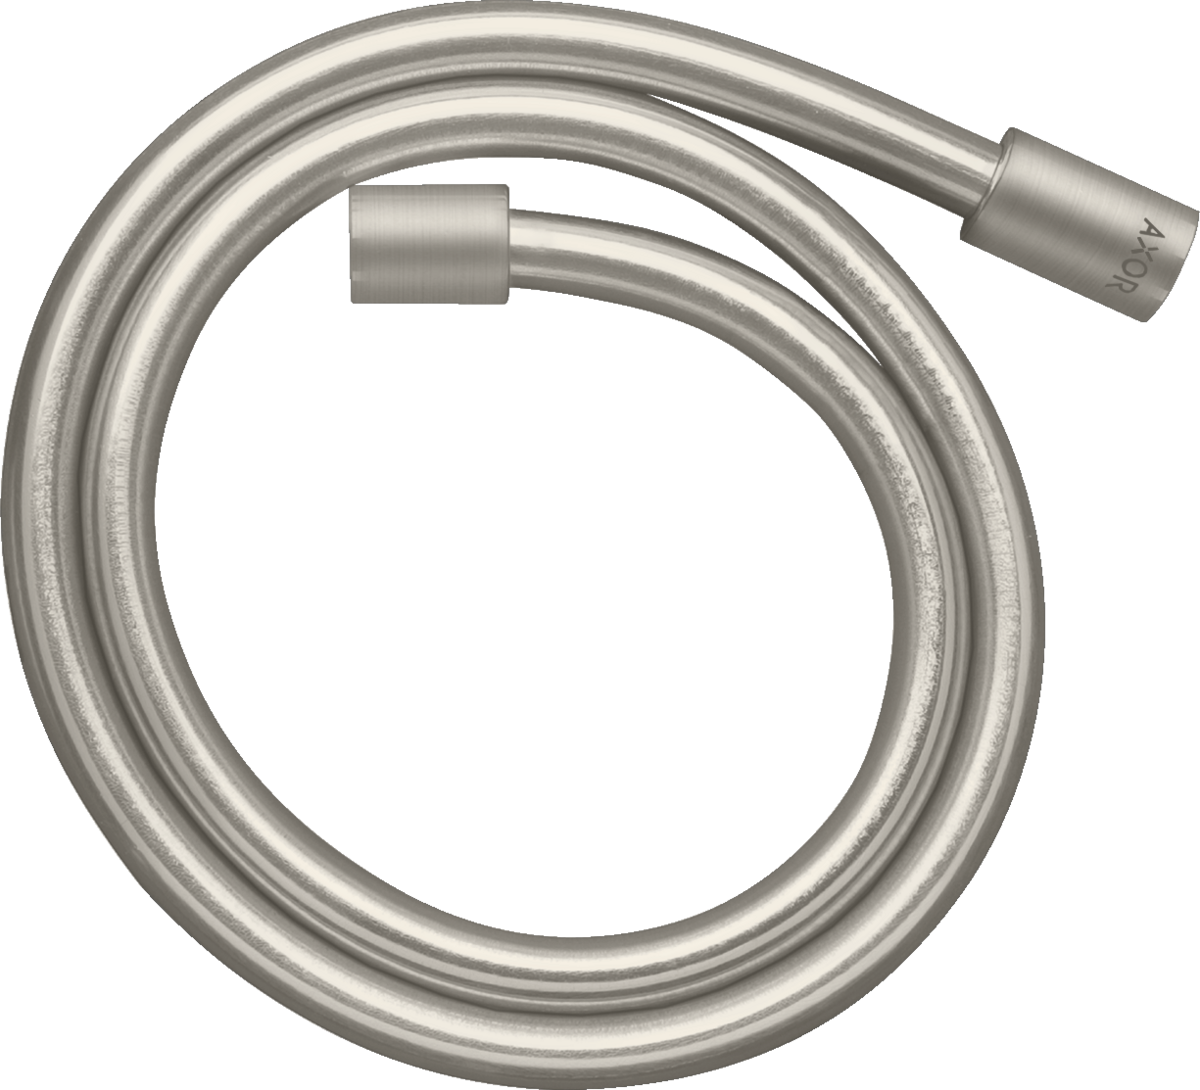 εικόνα του HANSGROHE AXOR Starck Metal effect shower hose 1.25 m with cylindrical nuts #28282800 - Stainless Steel Optic